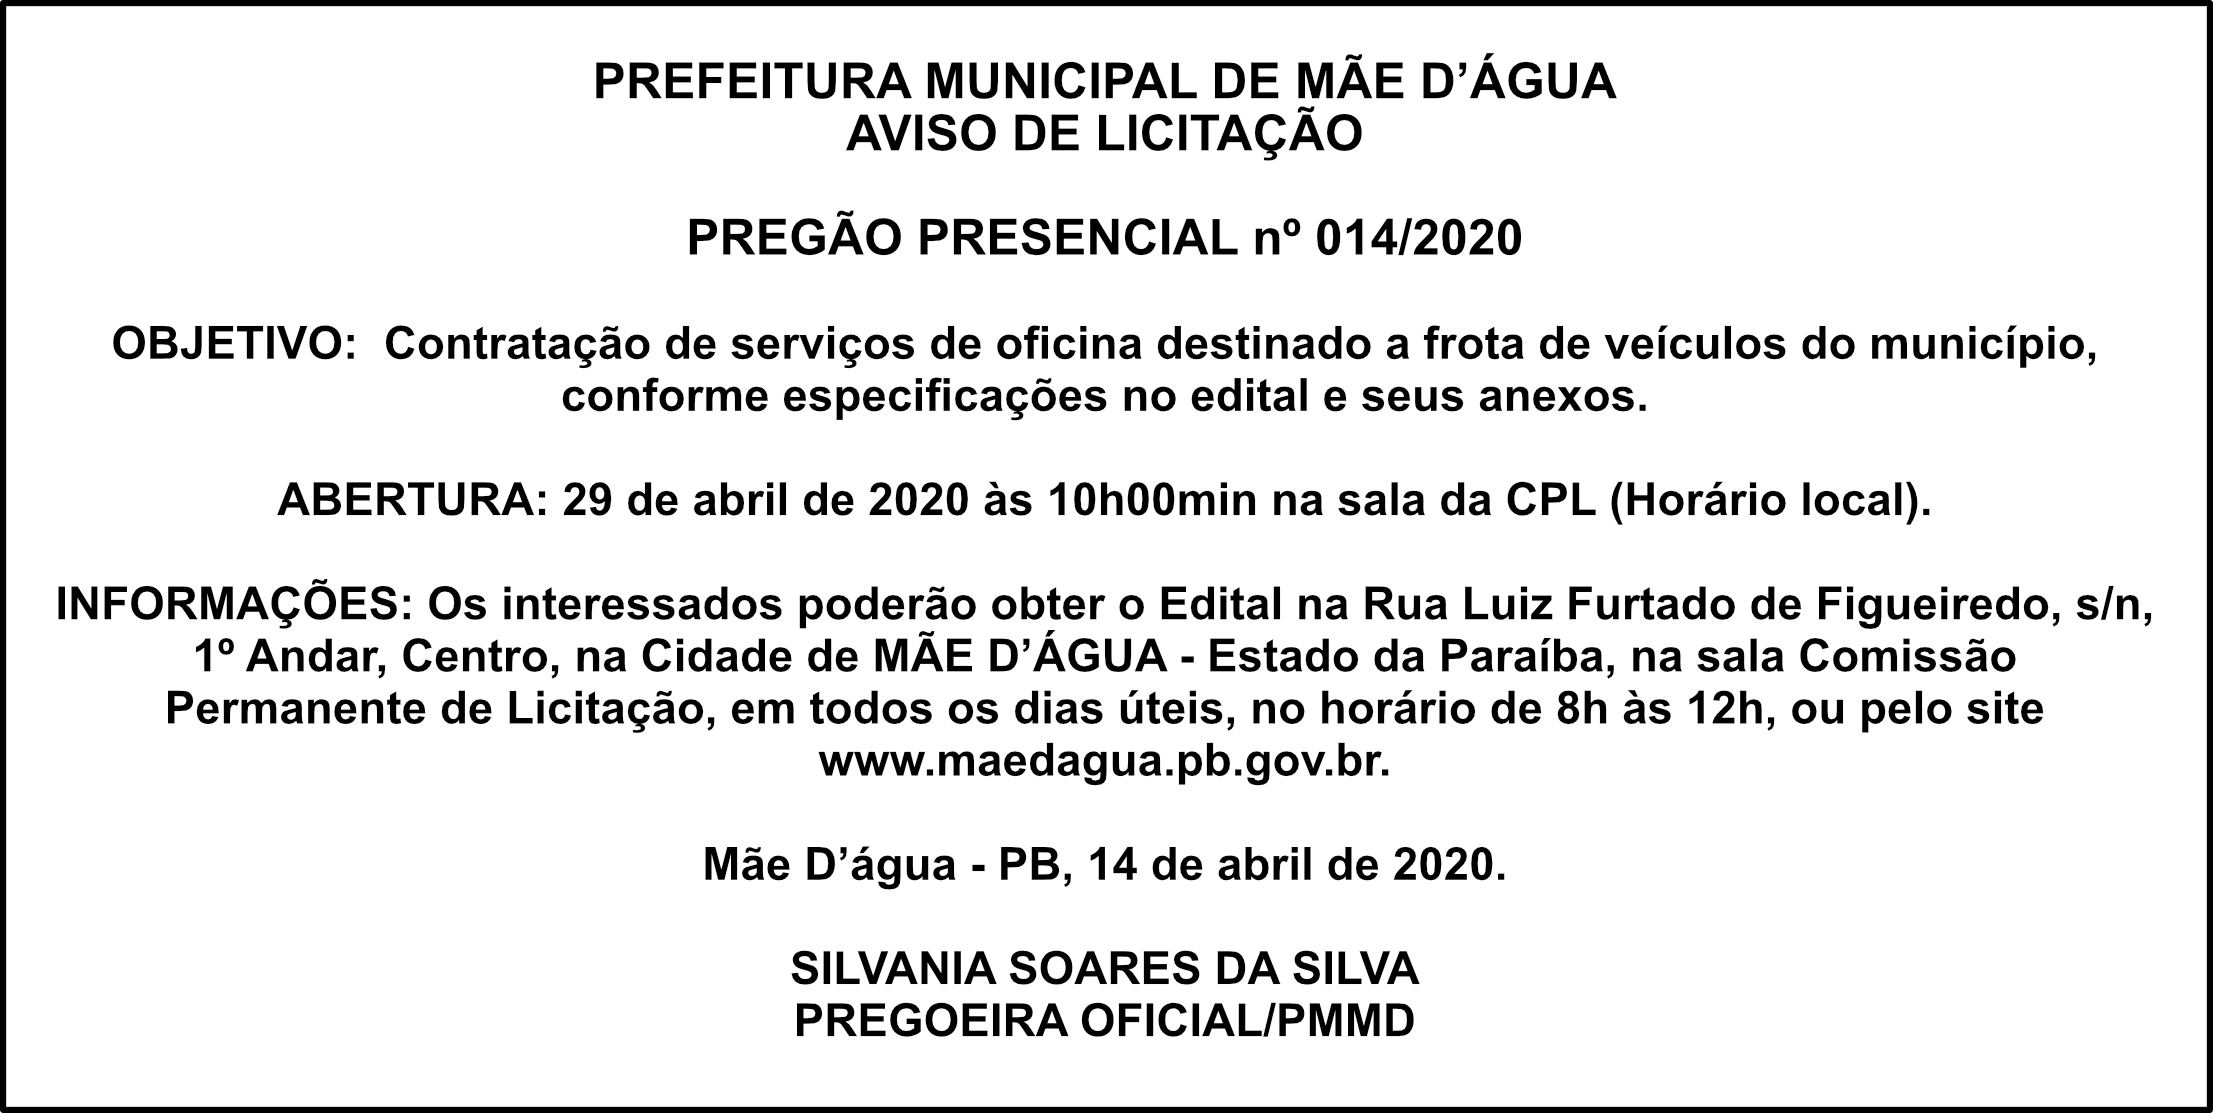 PREFEITURA DE MÃE D’ÁGUA – AVISO DE LICITAÇÃO – PREGÃO PRESENCIAL nº 014/2020